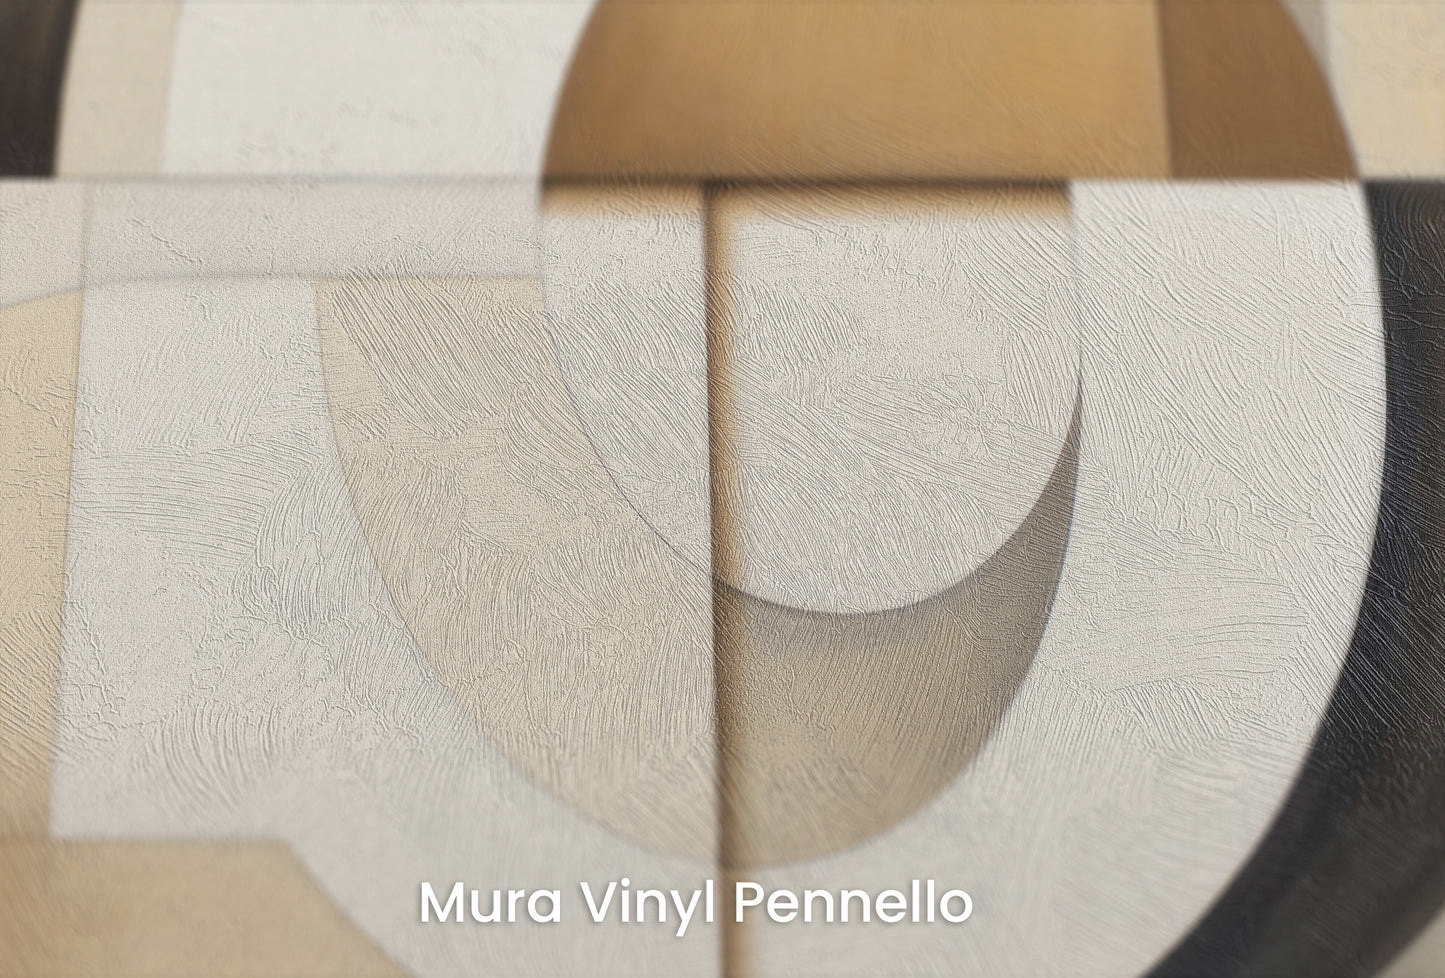 Zbliżenie na artystyczną fototapetę o nazwie MODERNIST SPHERICAL ARRAY na podłożu Mura Vinyl Pennello - faktura pociągnięć pędzla malarskiego.